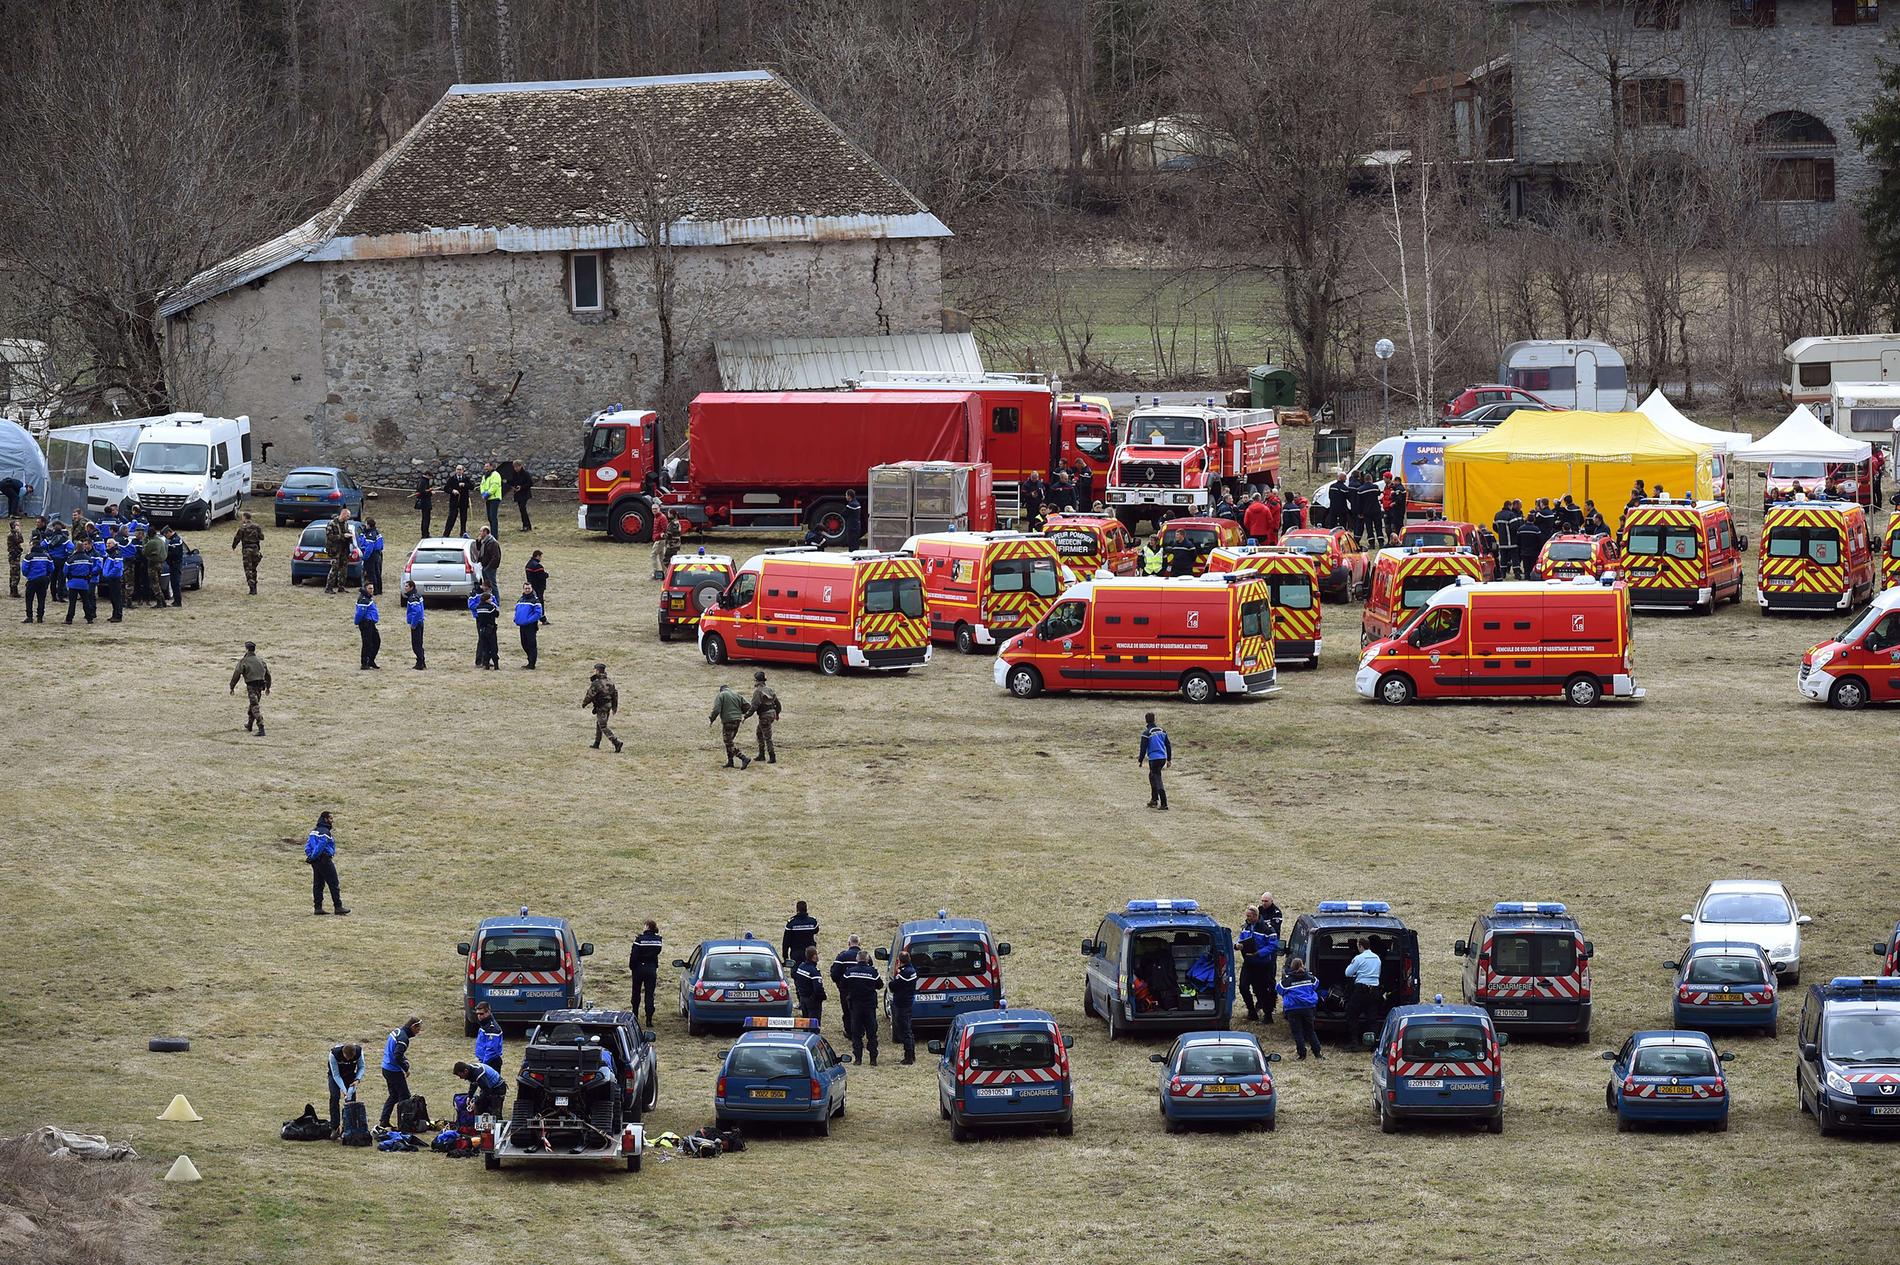 Fransk polis och räddningstjänst smlas i Seyne i närheten av platsen där flygplanet kraschade.